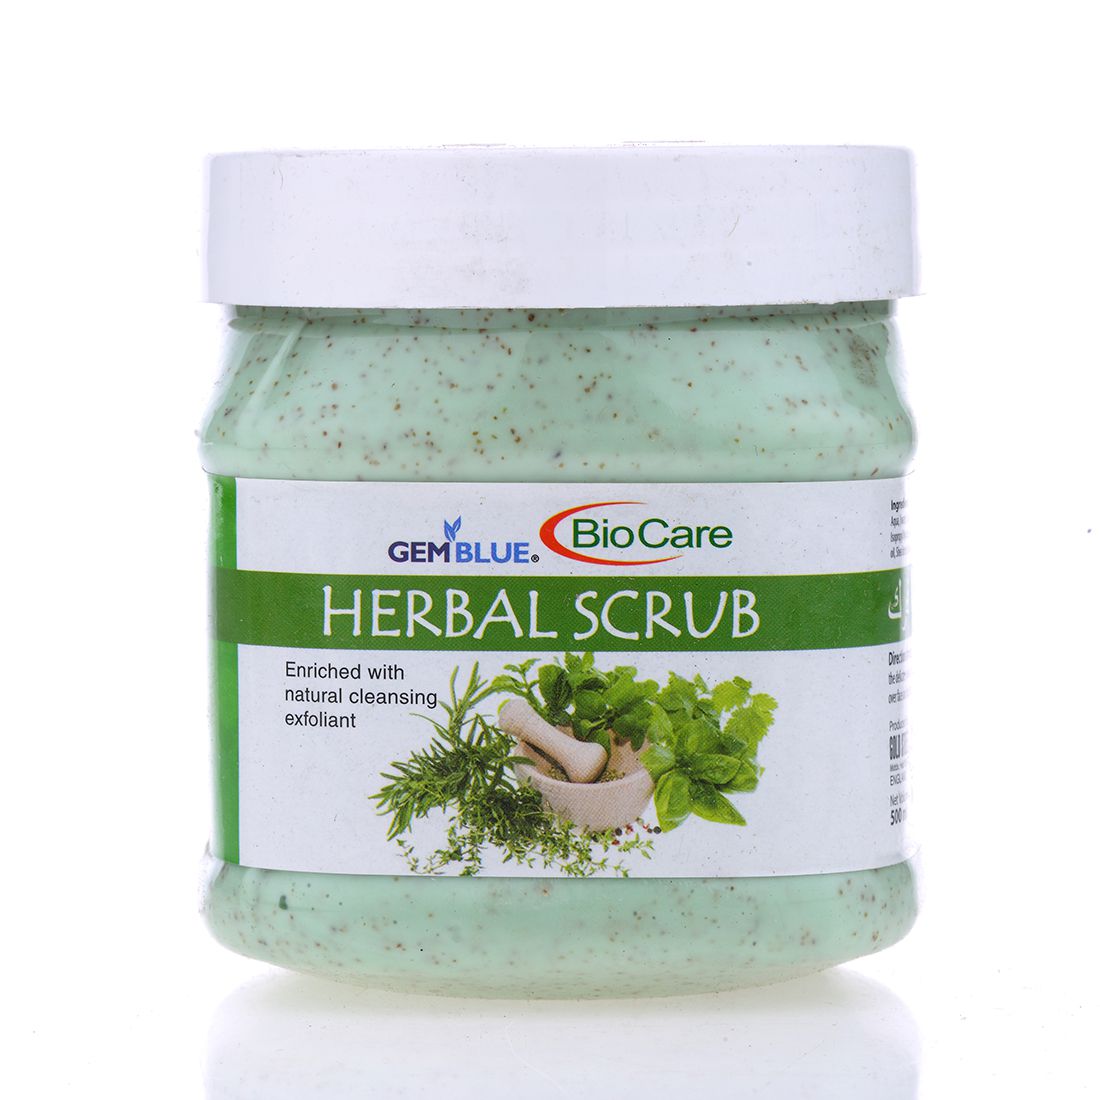     			gemblue biocare Herbal Facial Scrub 500 ml